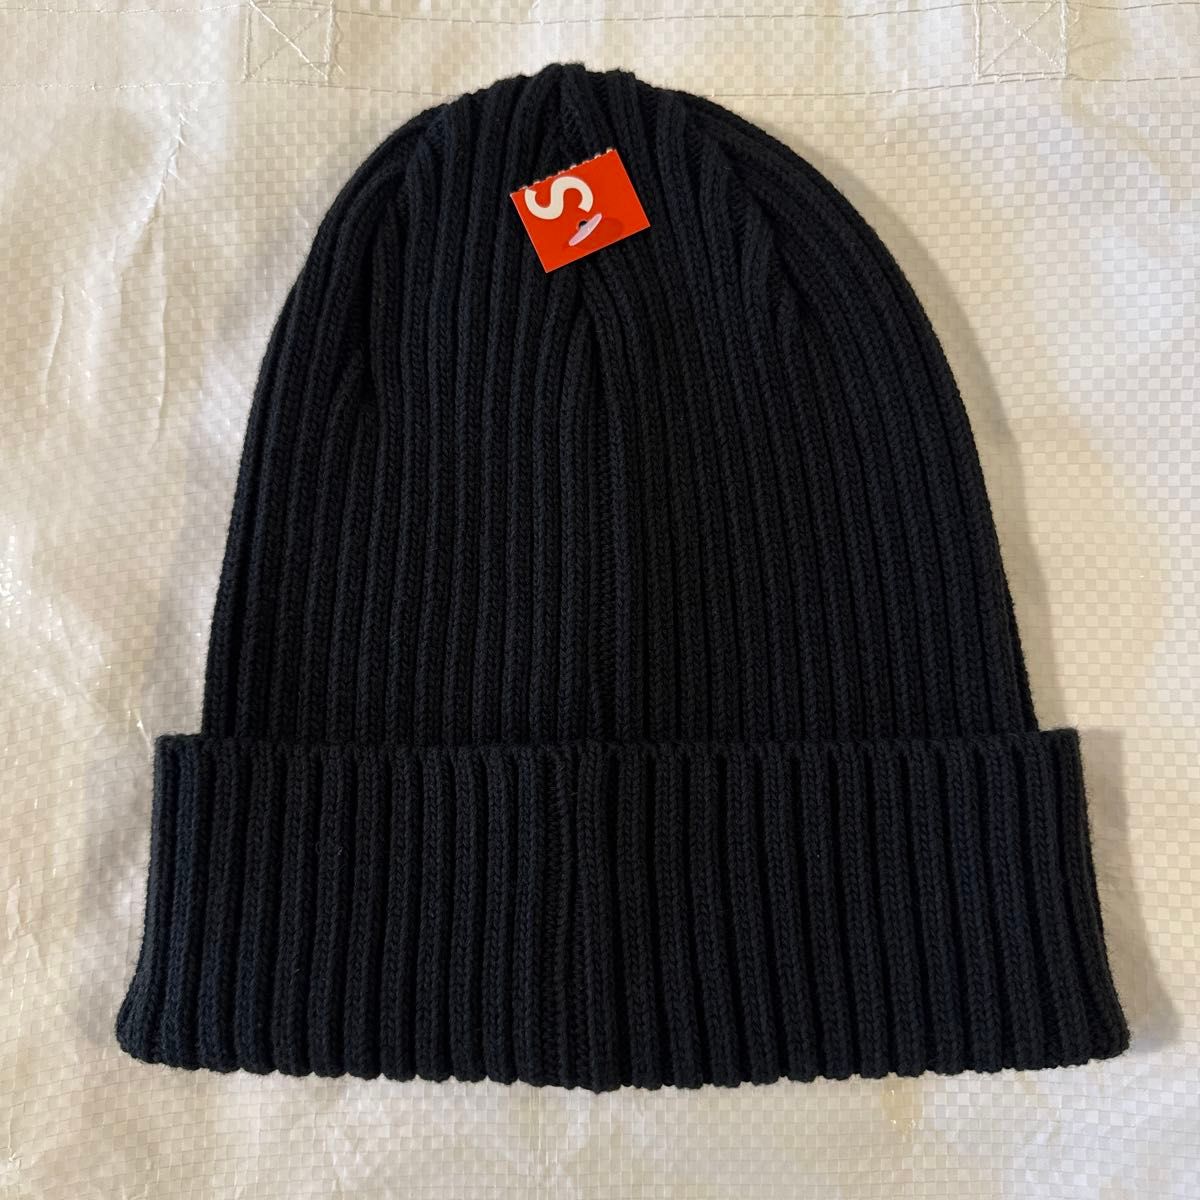 新品未使用】 24ss Supreme Overdyed Beanie ブラック ニット帽